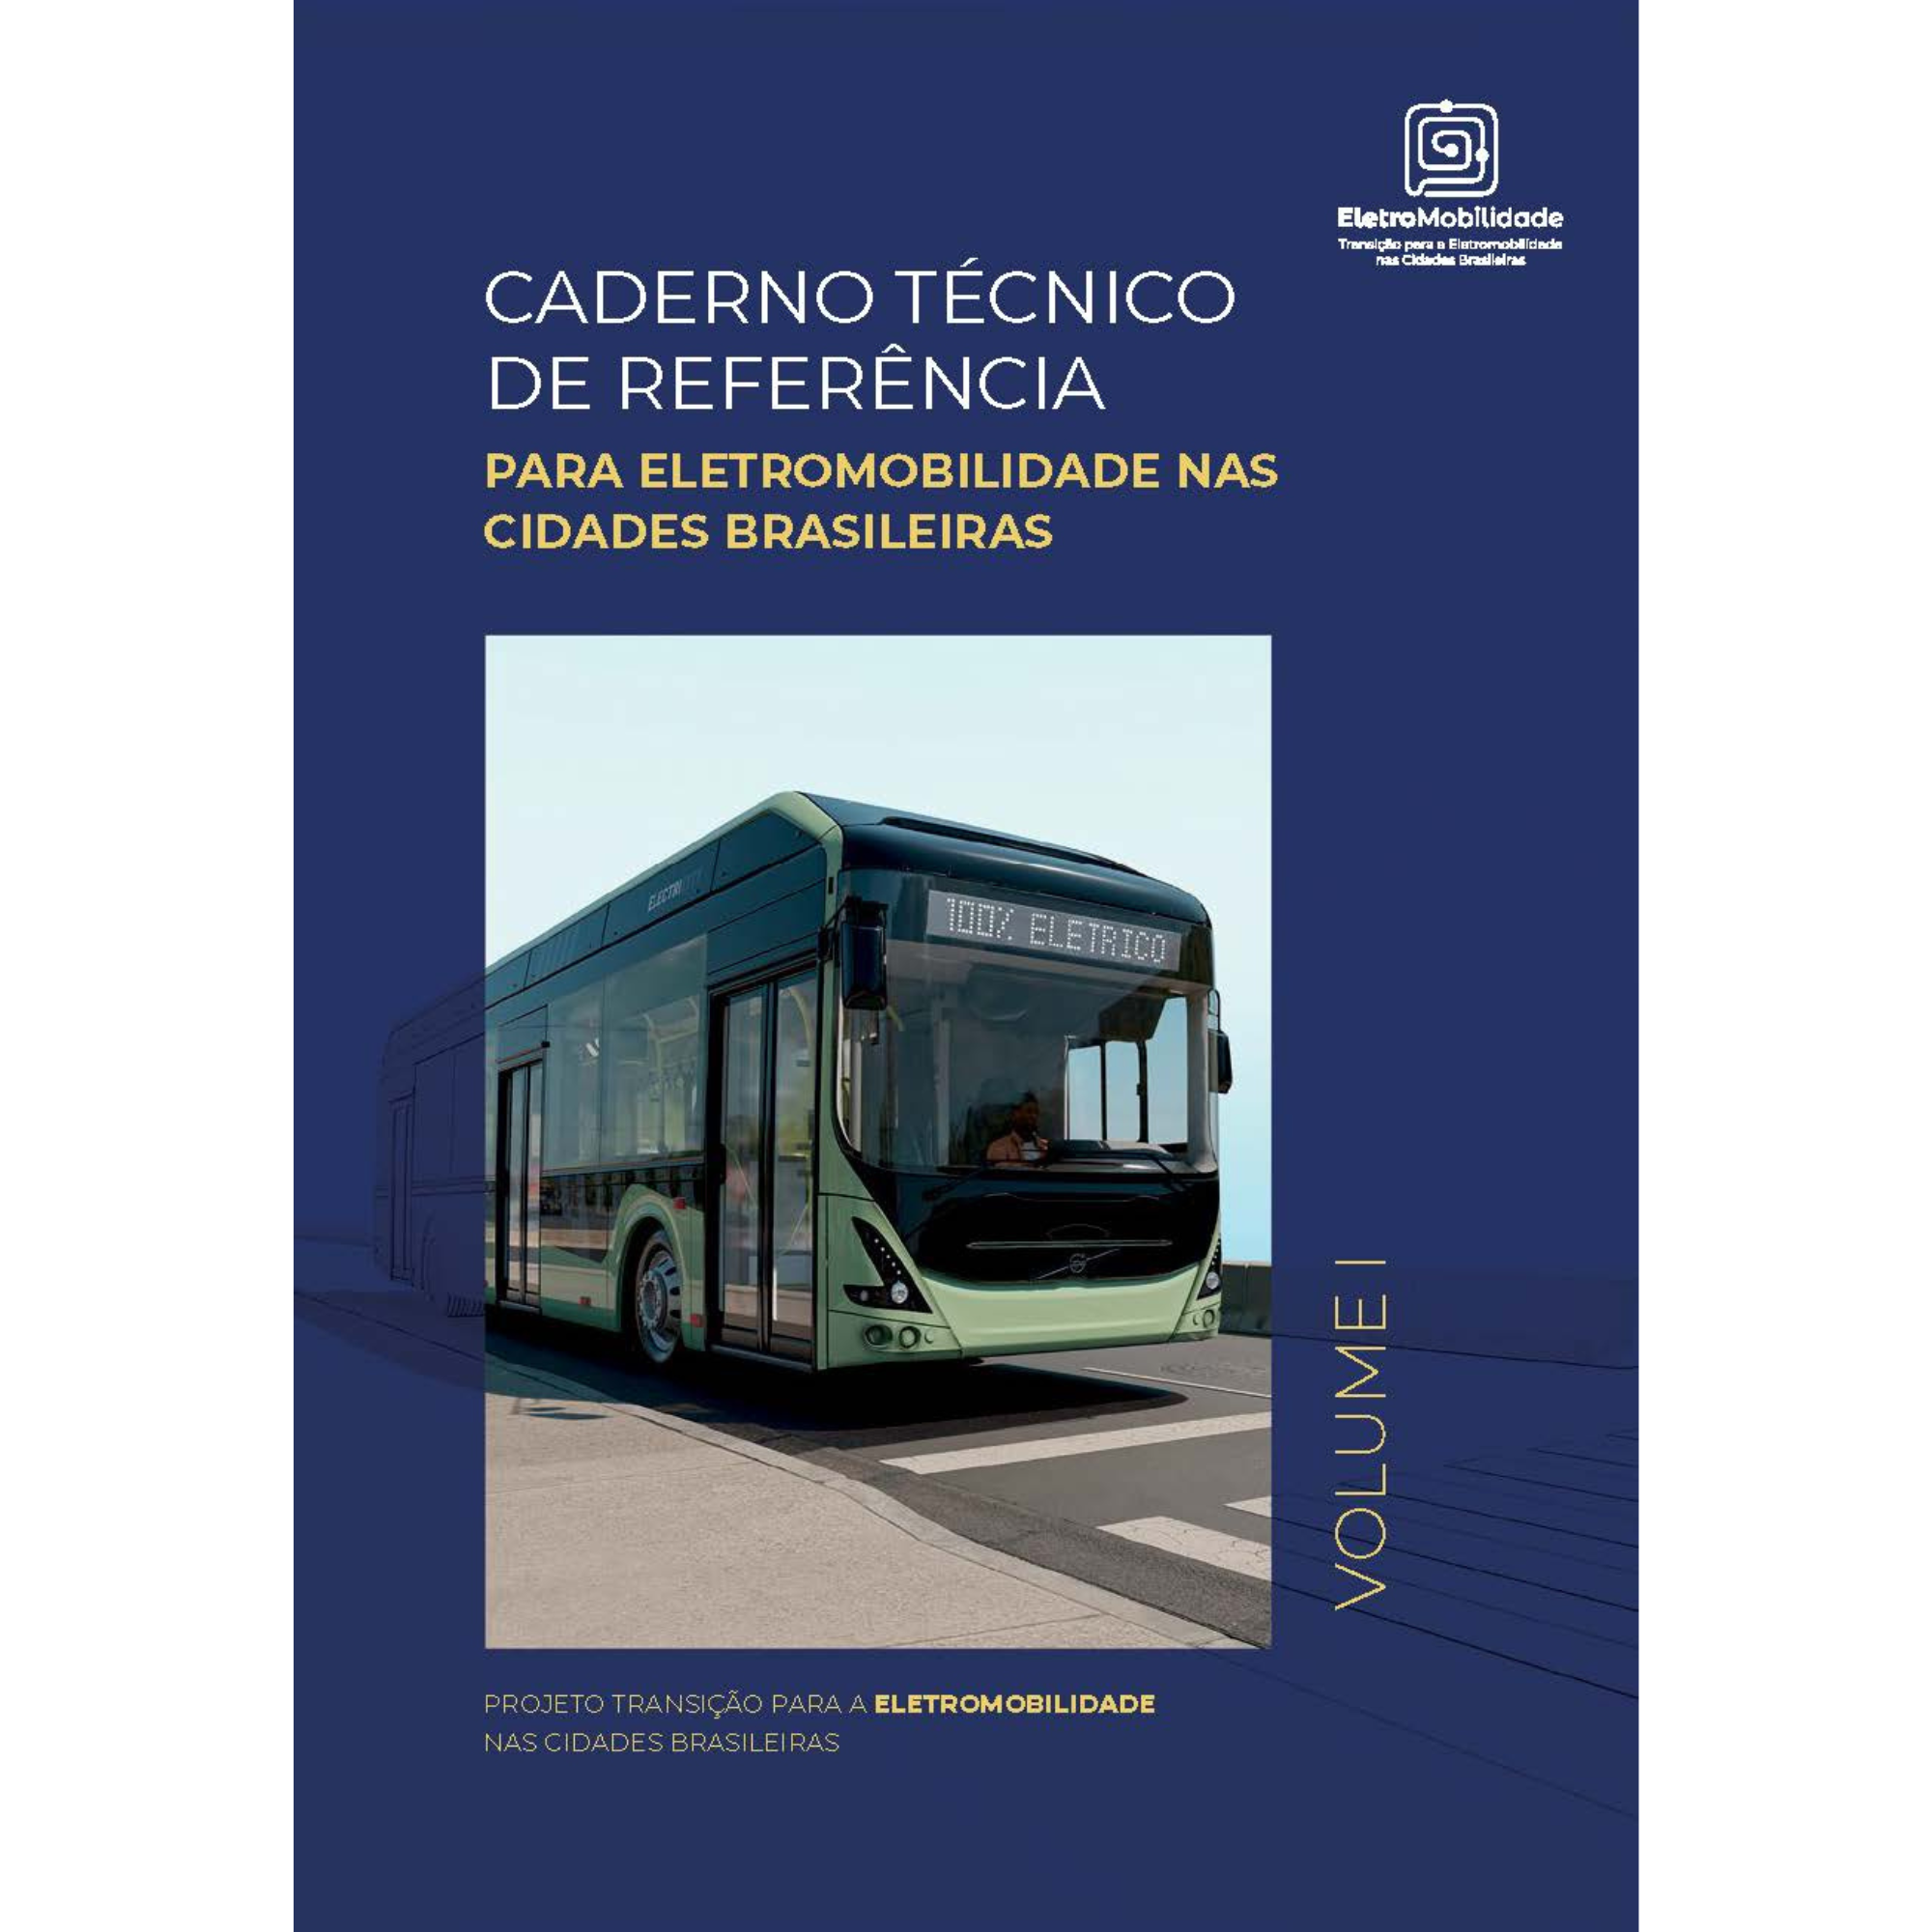 Caderno Técnico de Referência para Eletromobilidade nas Cidades Brasileiras